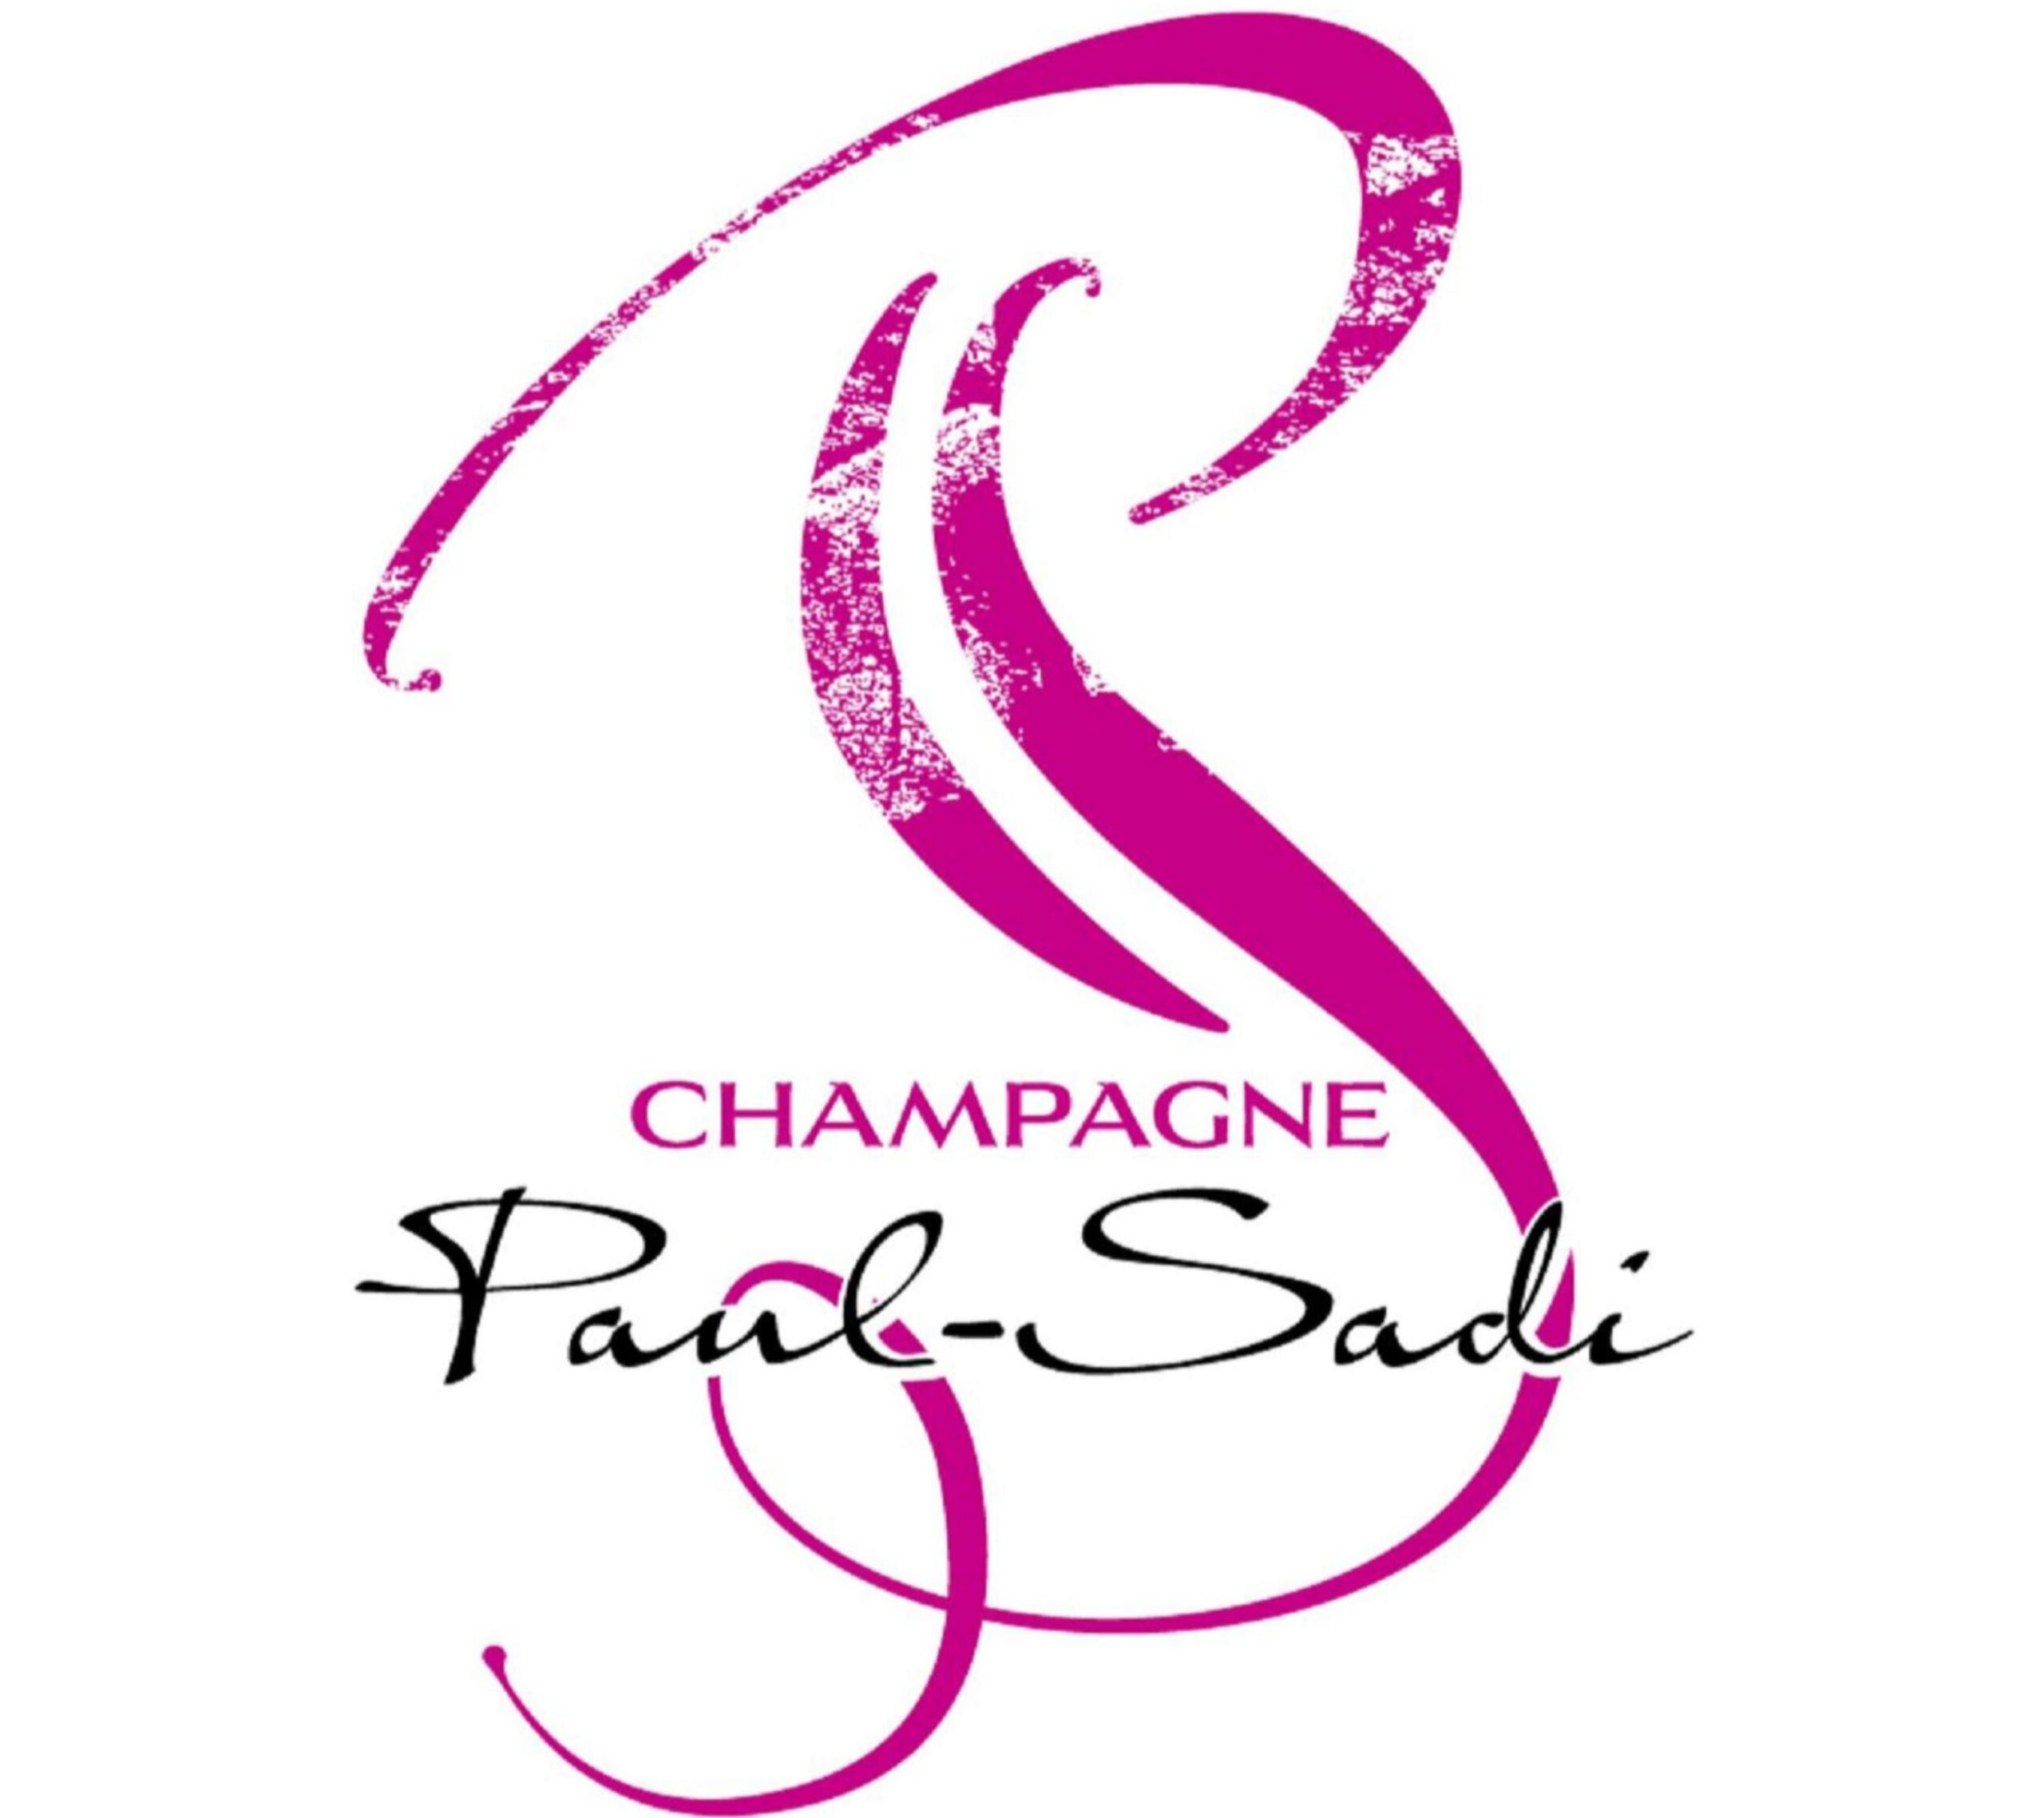 Champagne Paul-Sadi